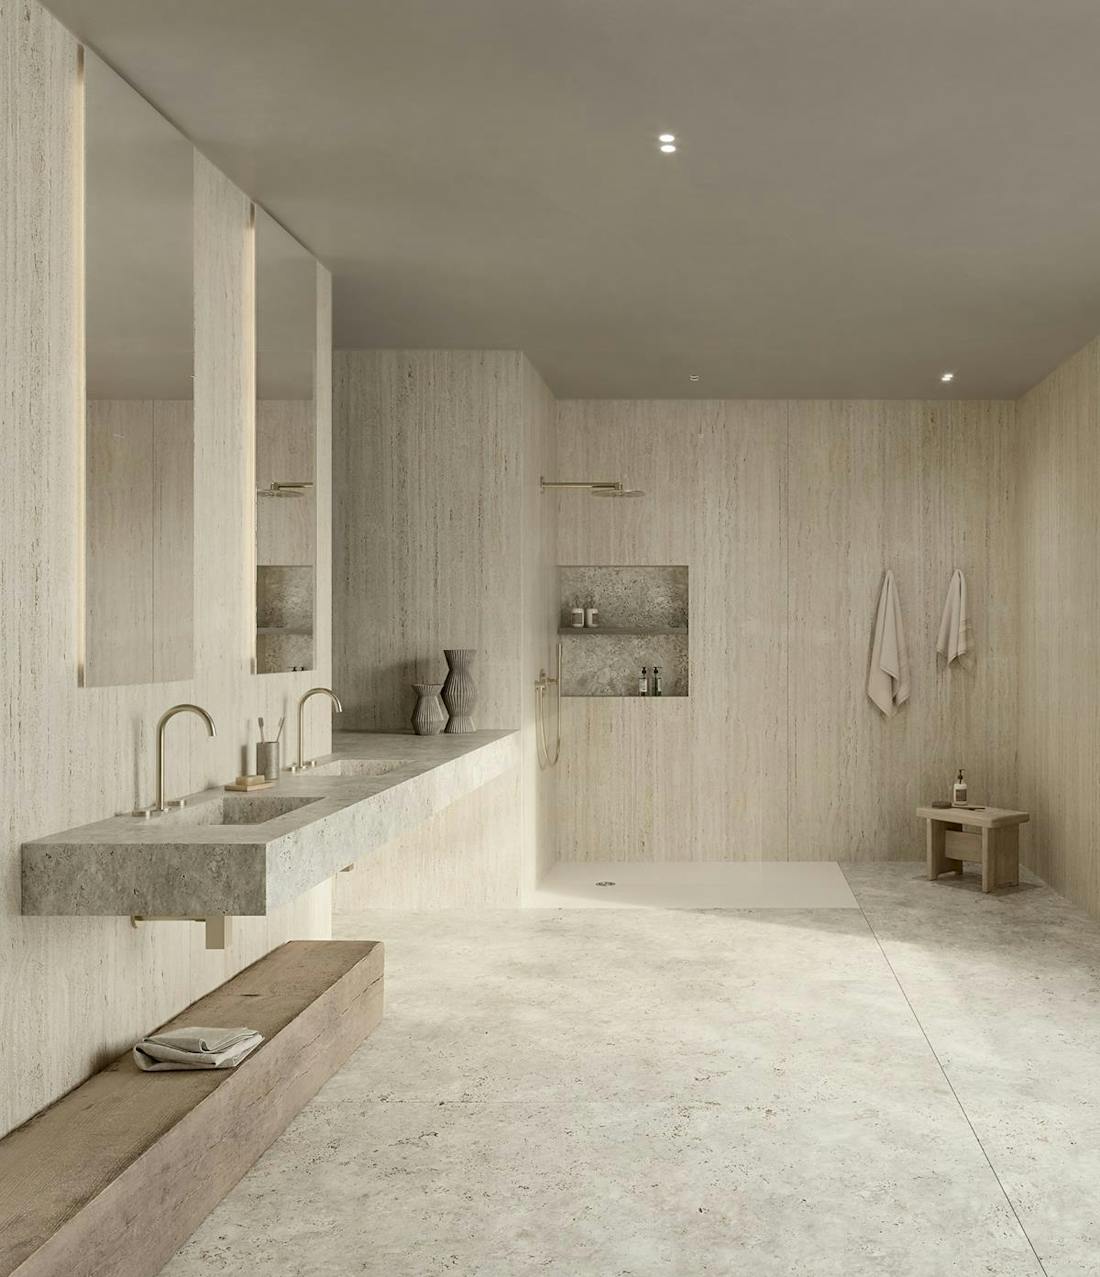 C-Bath : la salle de bain complète selon Cosentino